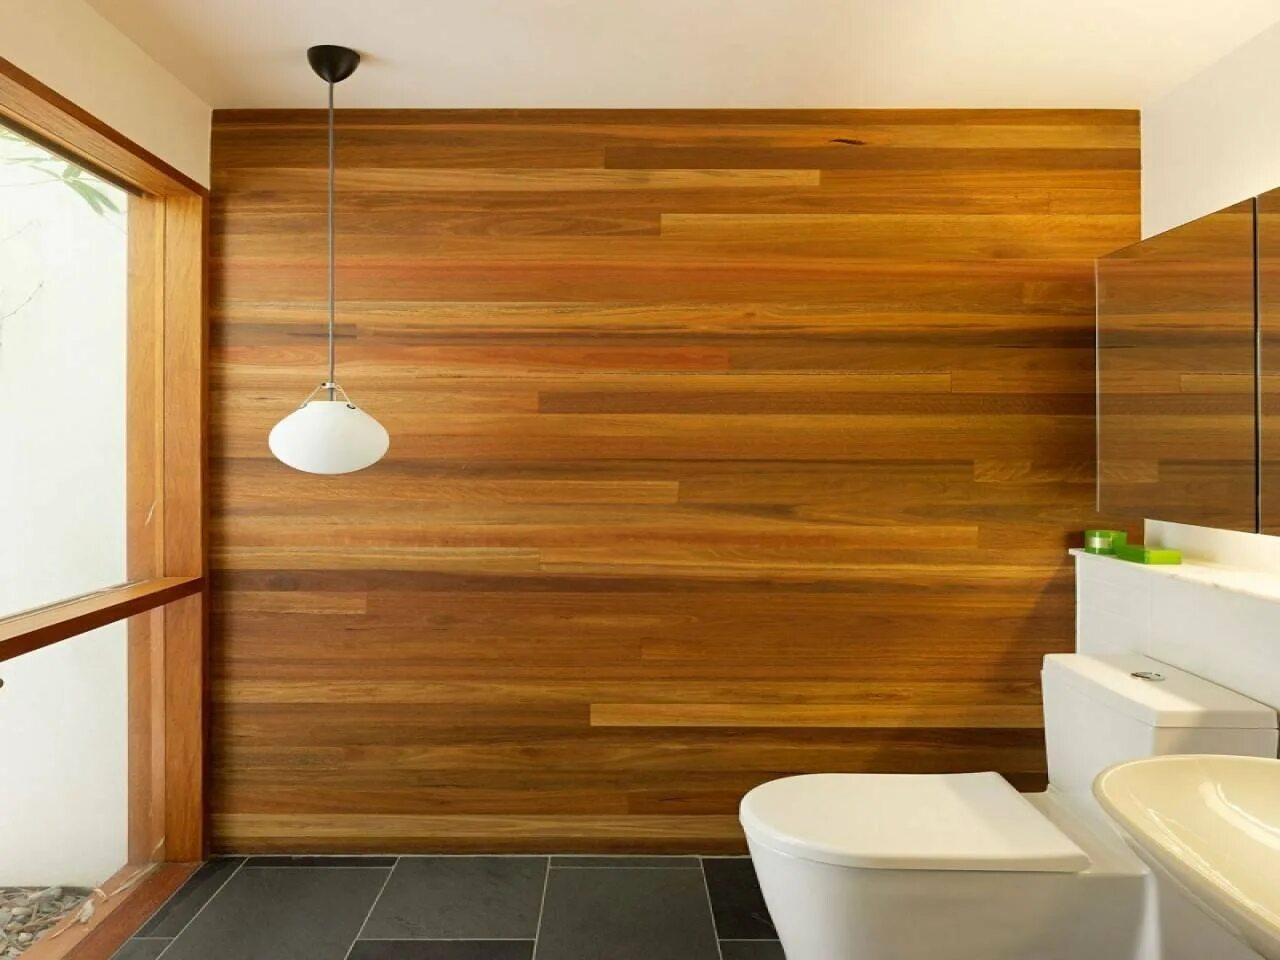 Панели для ванной под дерево. Панели для отделки стен в ванной. Дерево в интерьере ванной комнаты. Панели МДФ для стен в ванной. Отделка пвх плиткой